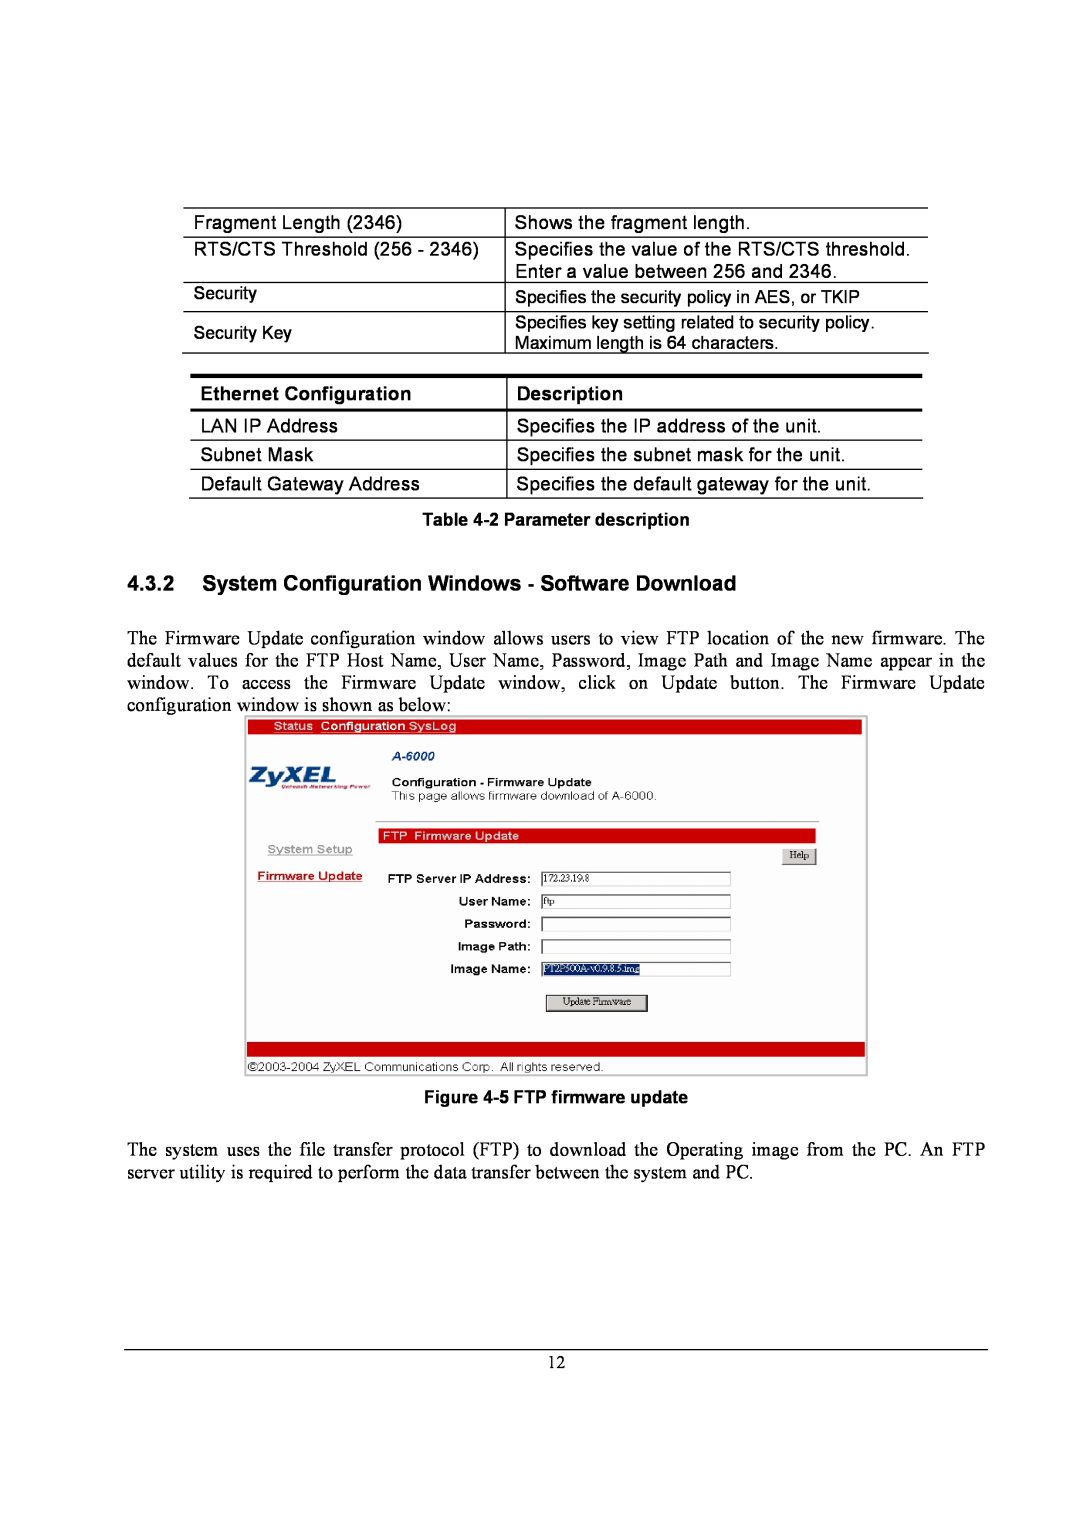 ZyXEL Communications A-6000 System Configuration Windows - Software Download, Ethernet Configuration, Description 